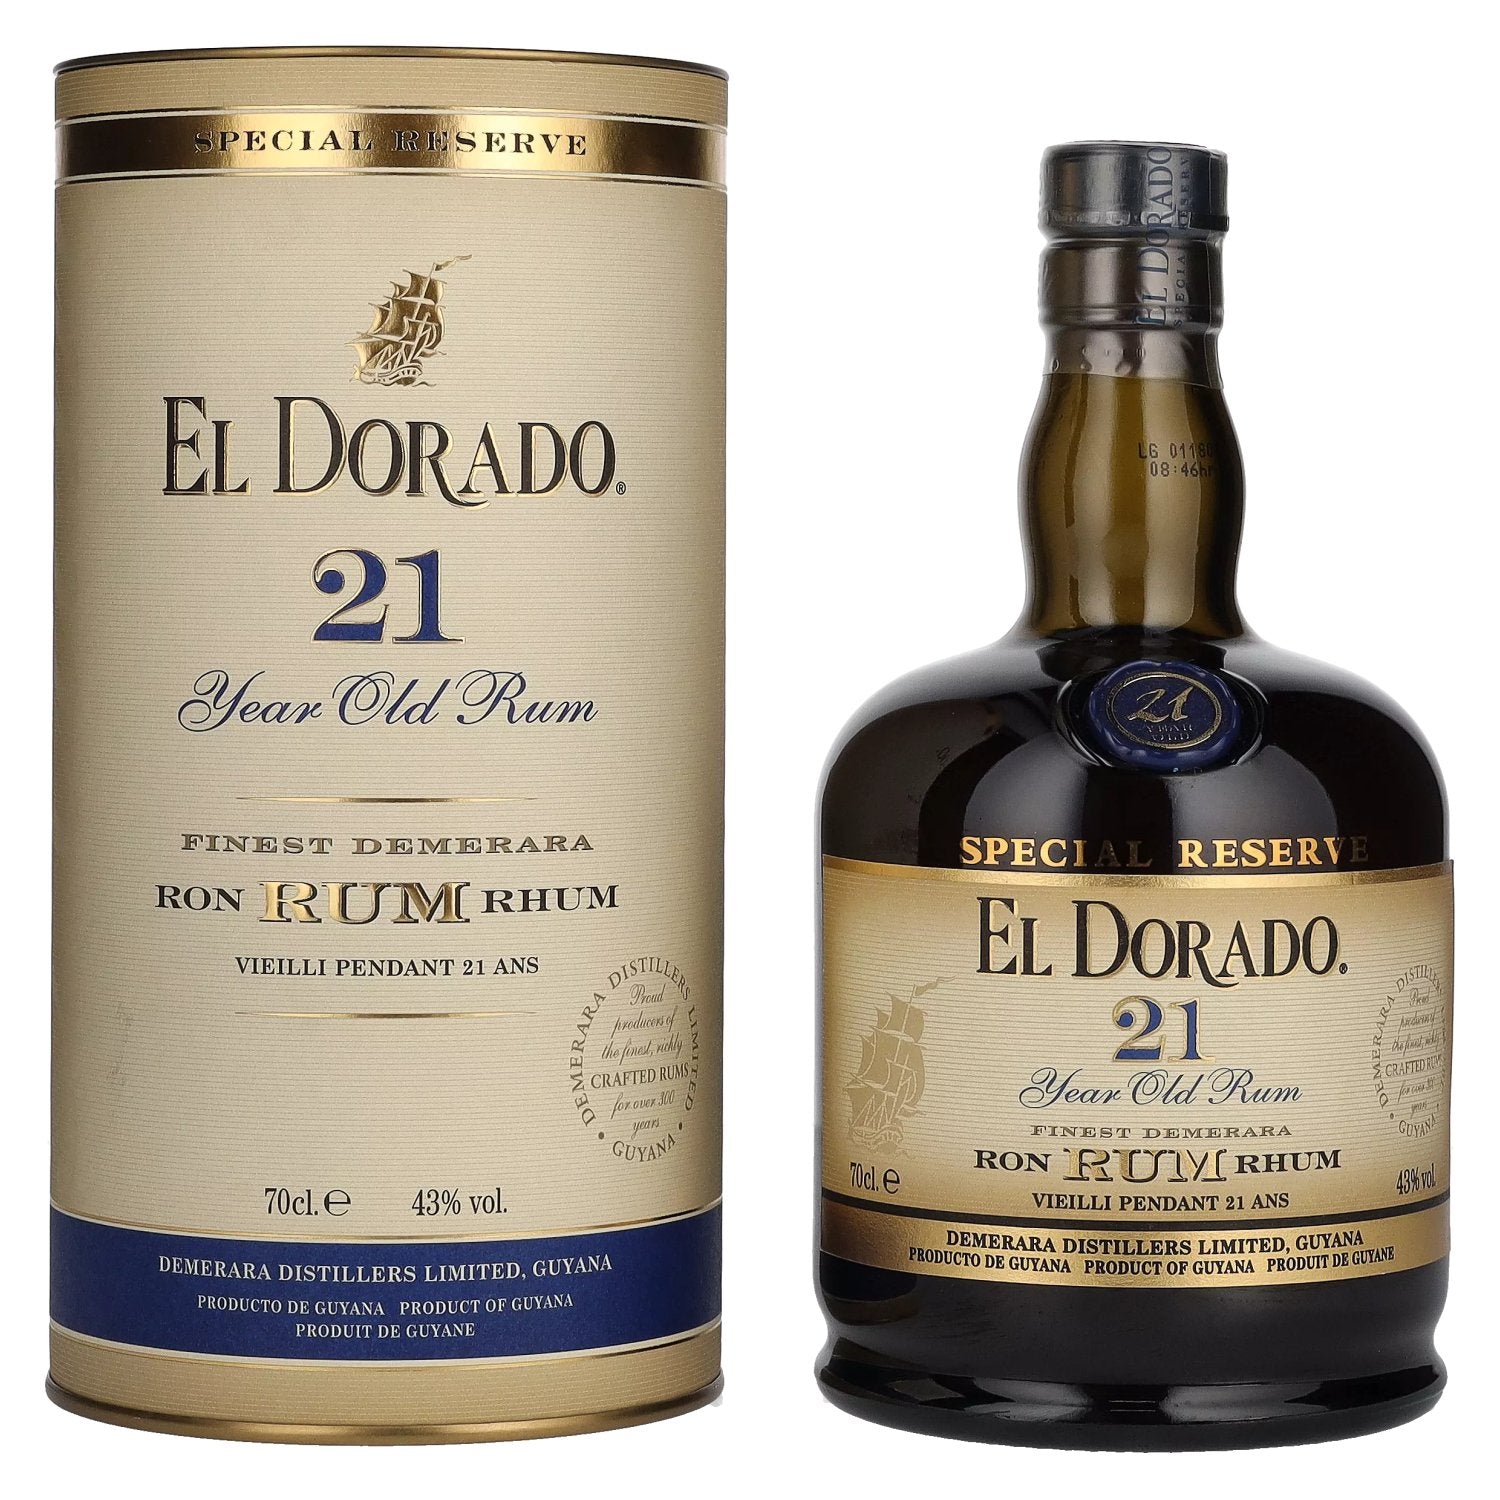 El Dorado 21 Years Old Finest Demerara Rum SPECIAL RESERVE GB 43% Vol. 0,7l in Giftbox